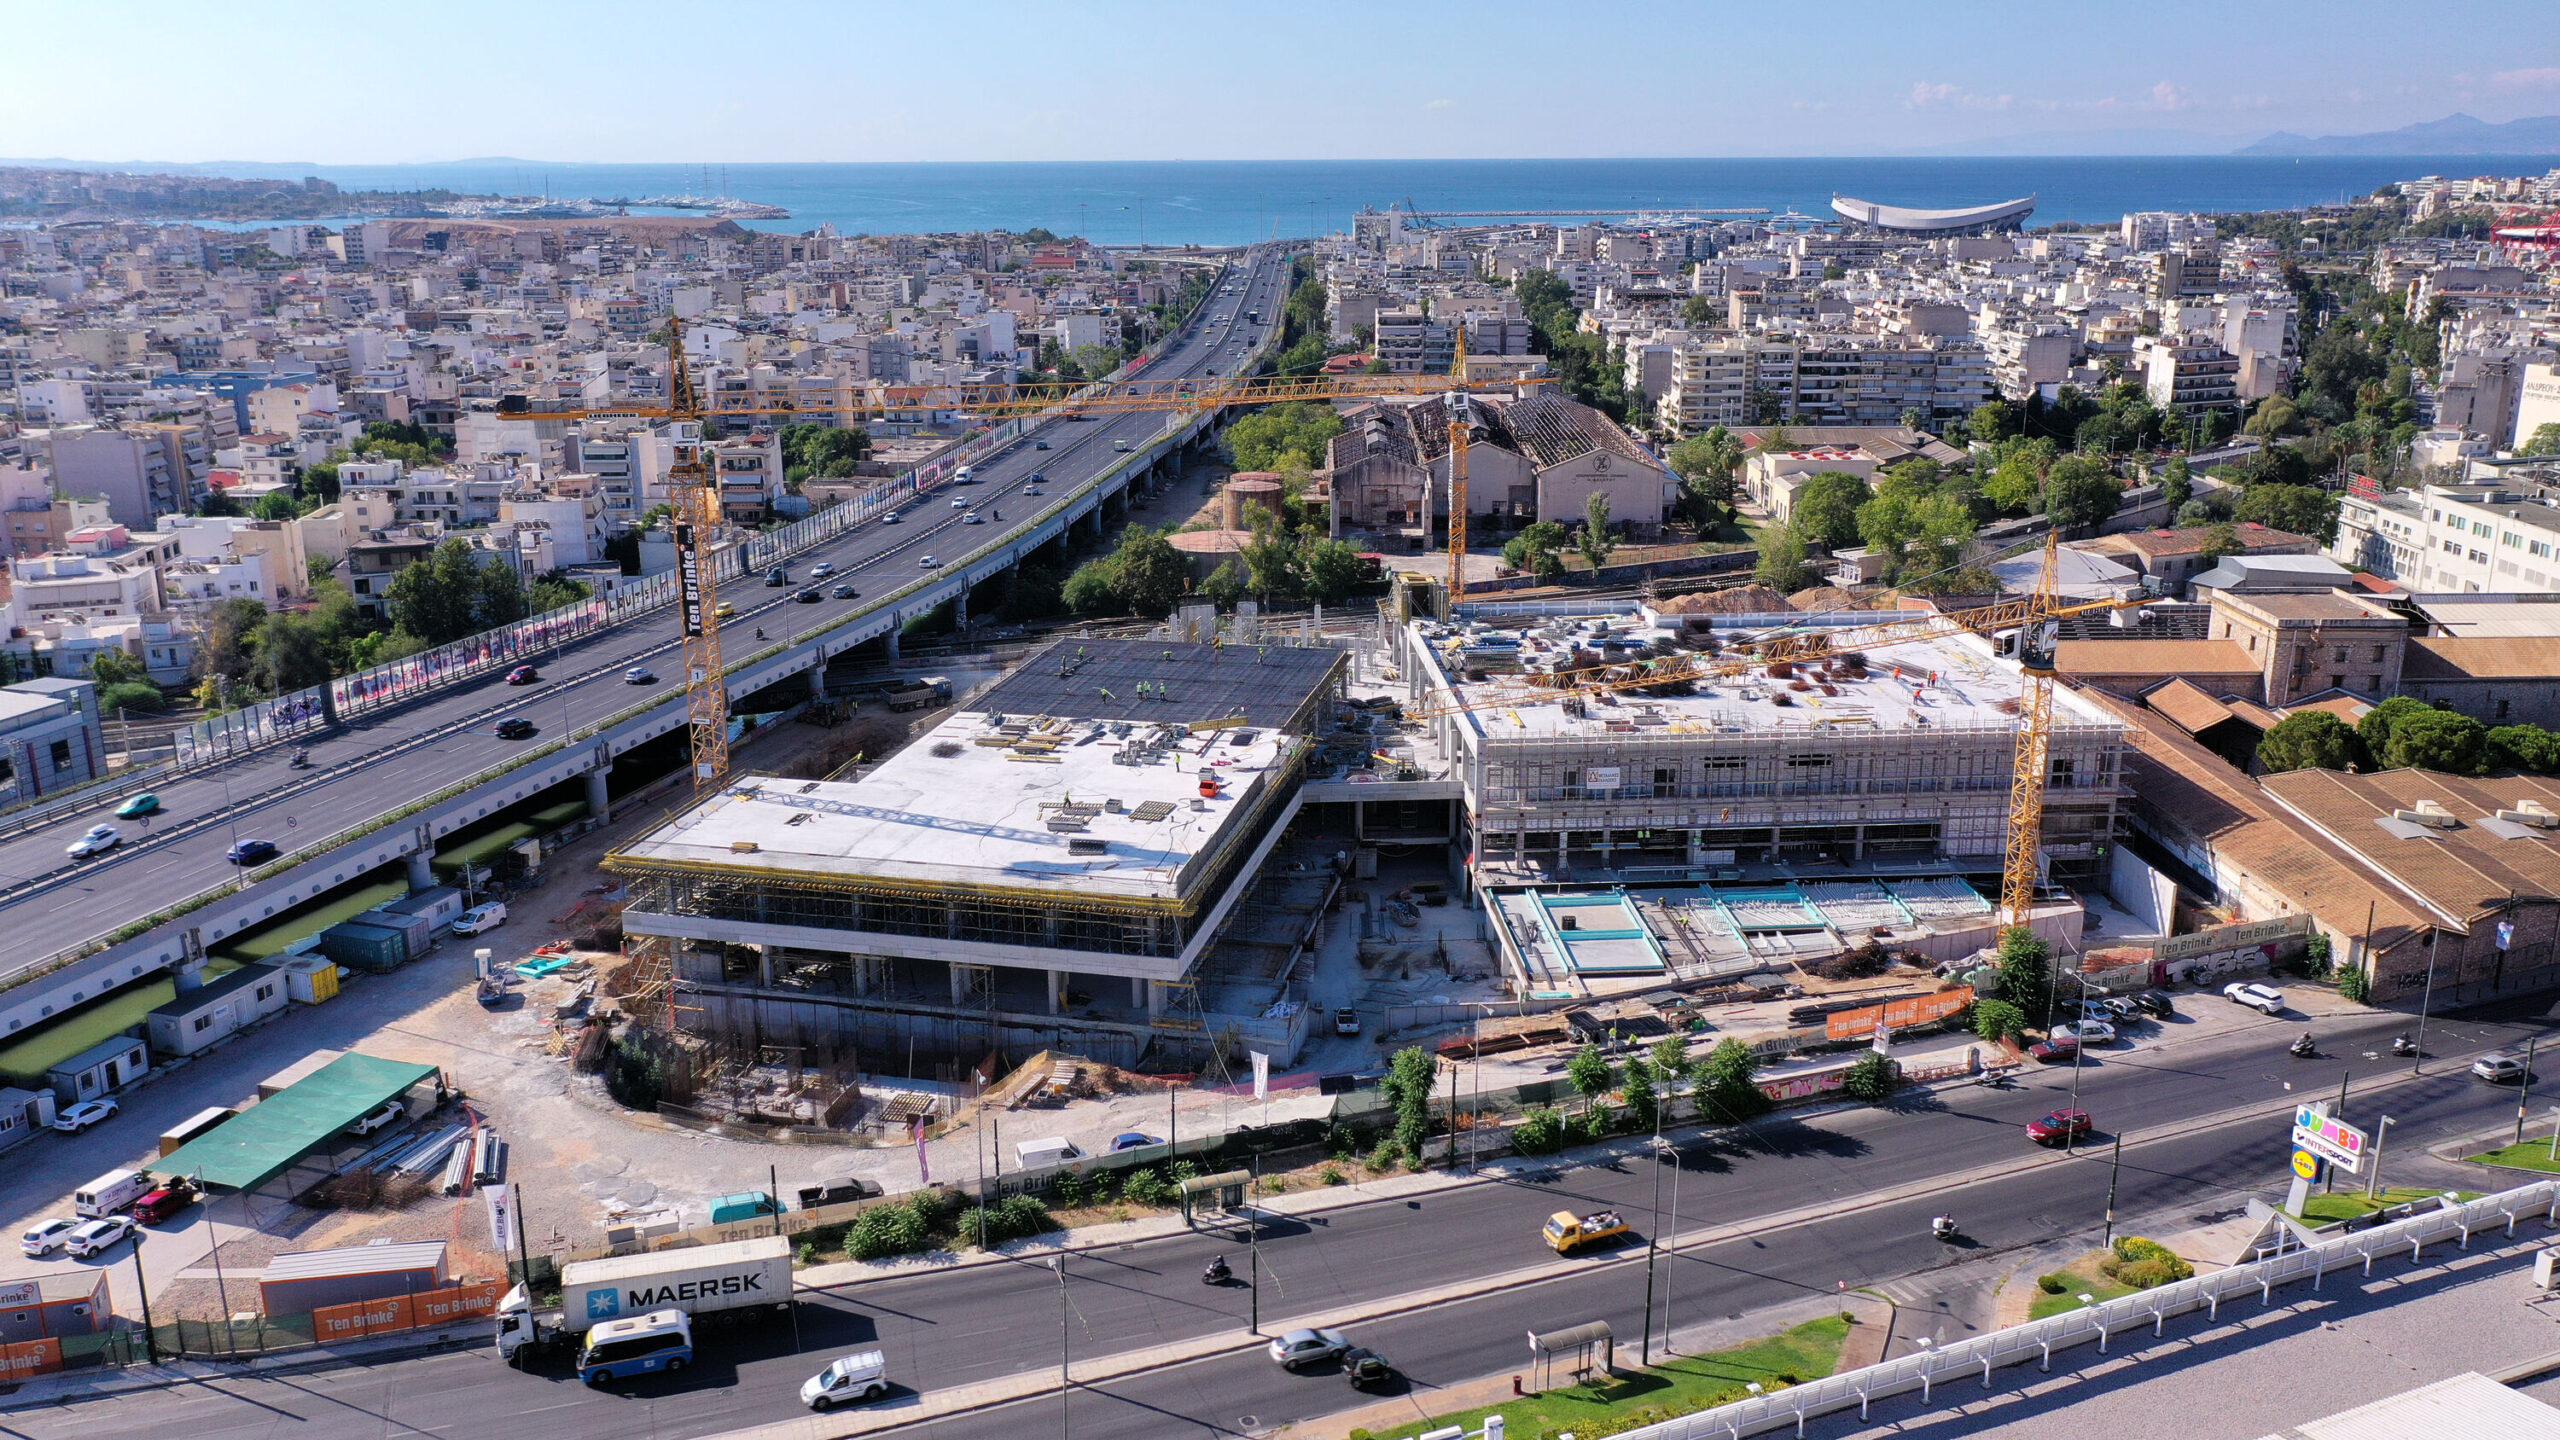 Το νέο Piraeus Retail Park της Ten Brinke στο Νέο Φάληρο - Πηγή: Ten Brinke Hellas